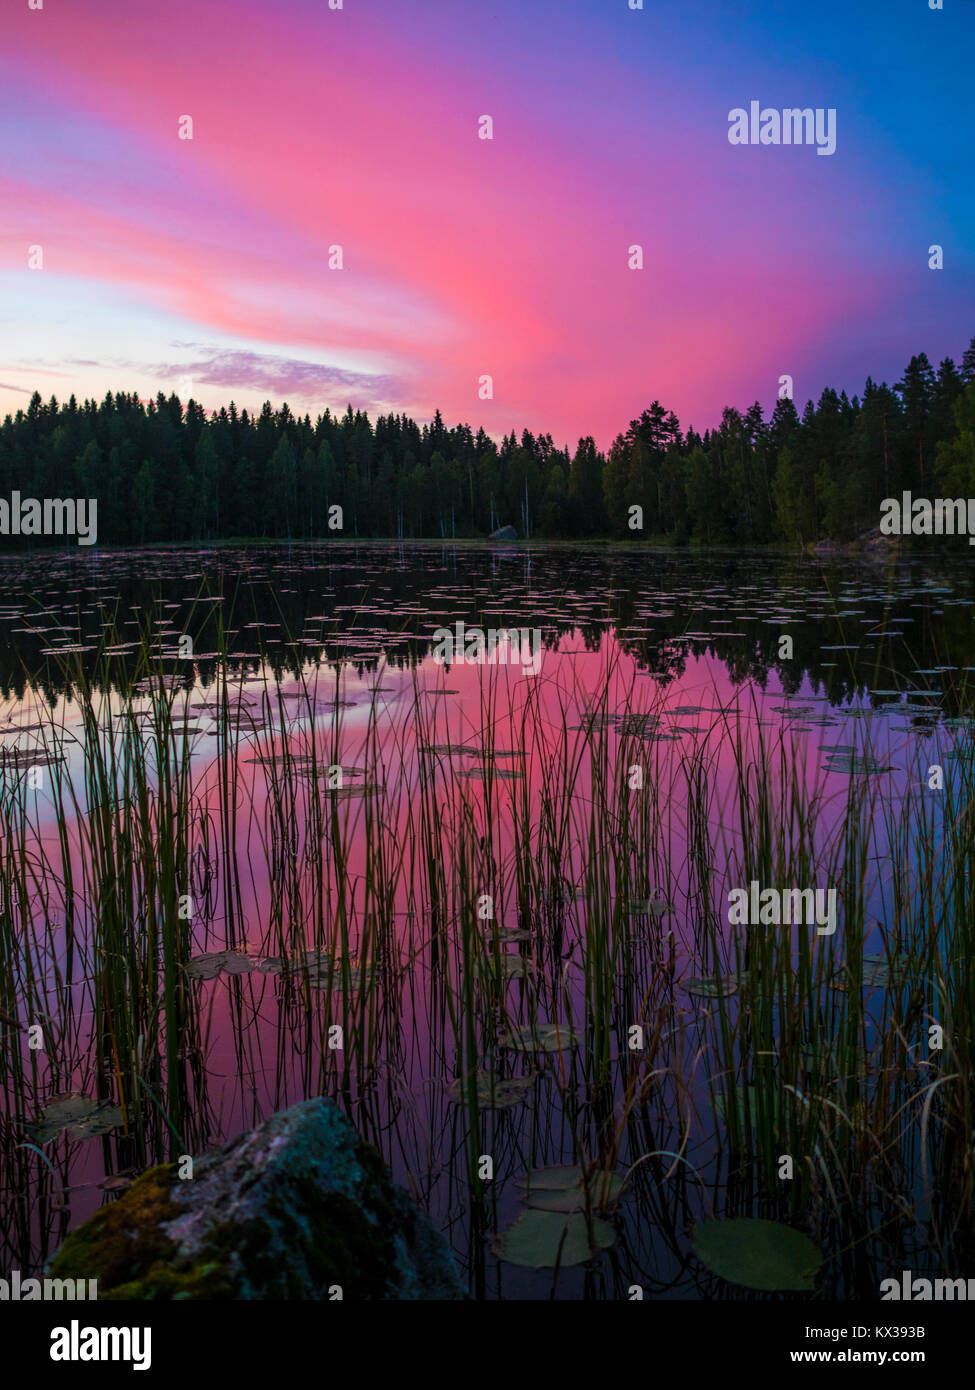 Amazing Sunset Lakeside View - Finland Stock Photo